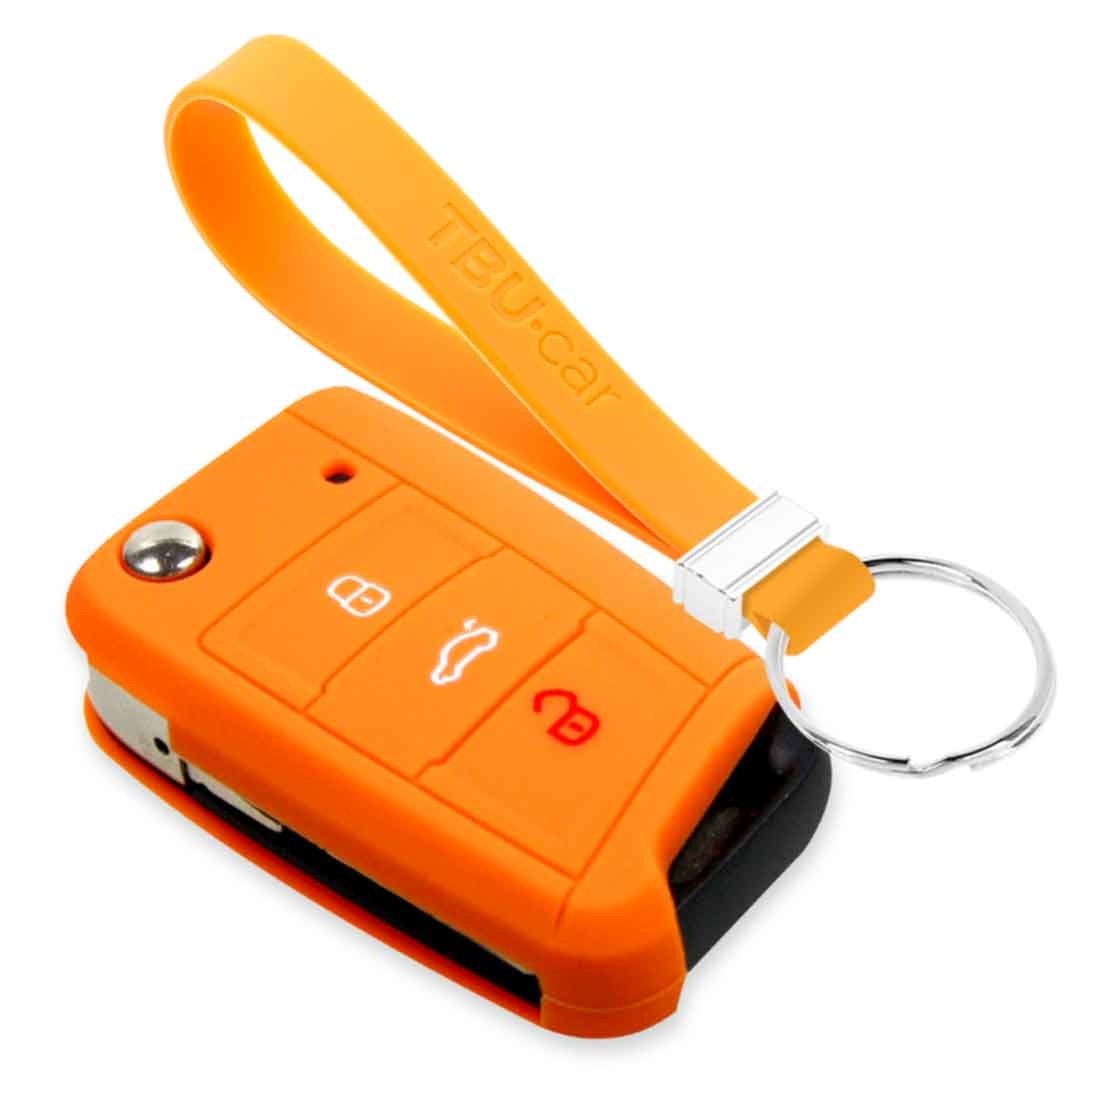 Mazda Car key cover Orange 